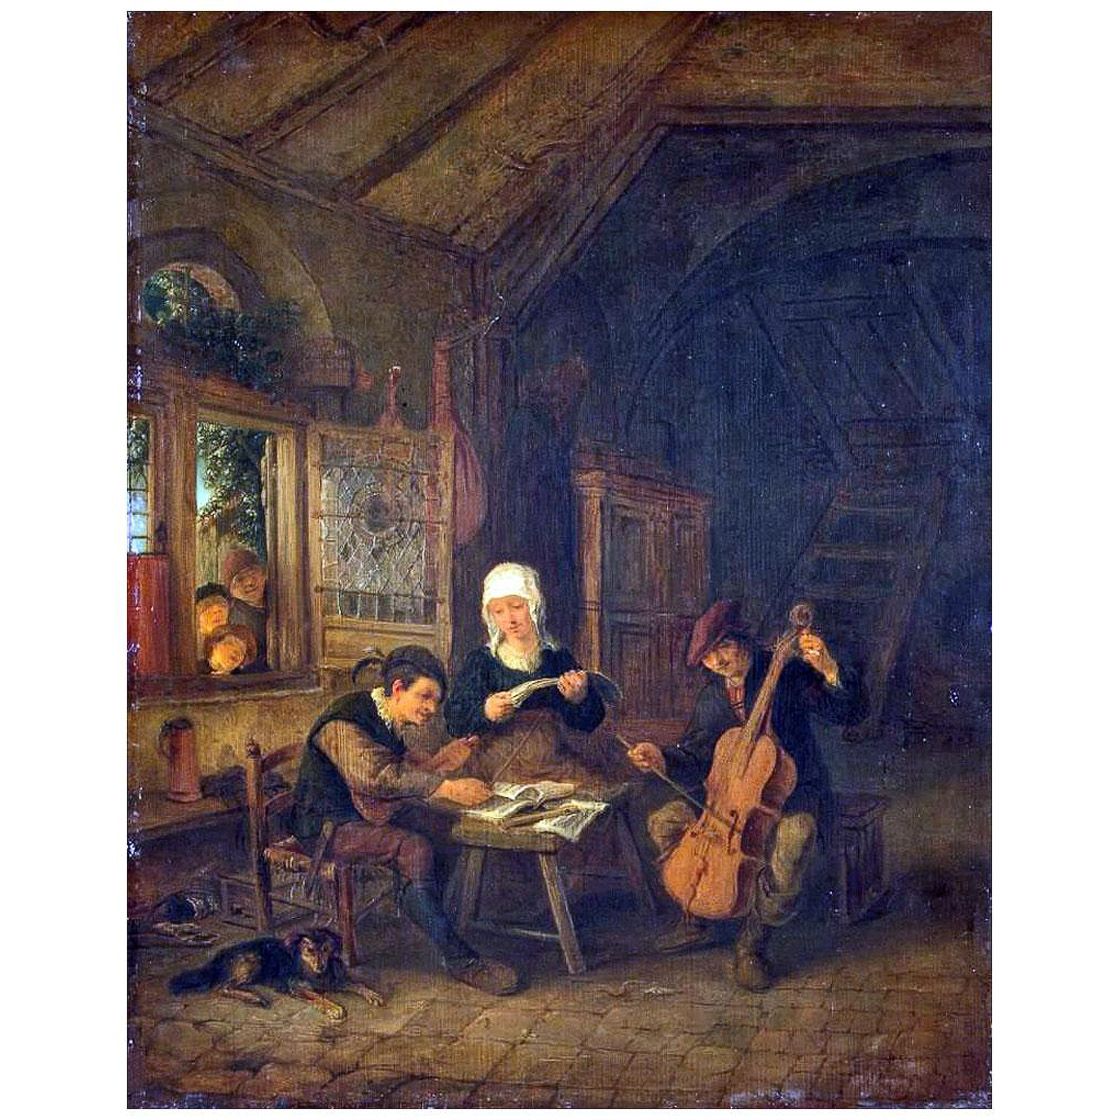 Adriaen van Ostade. Village Musicians. 1645. Hermitage Museum